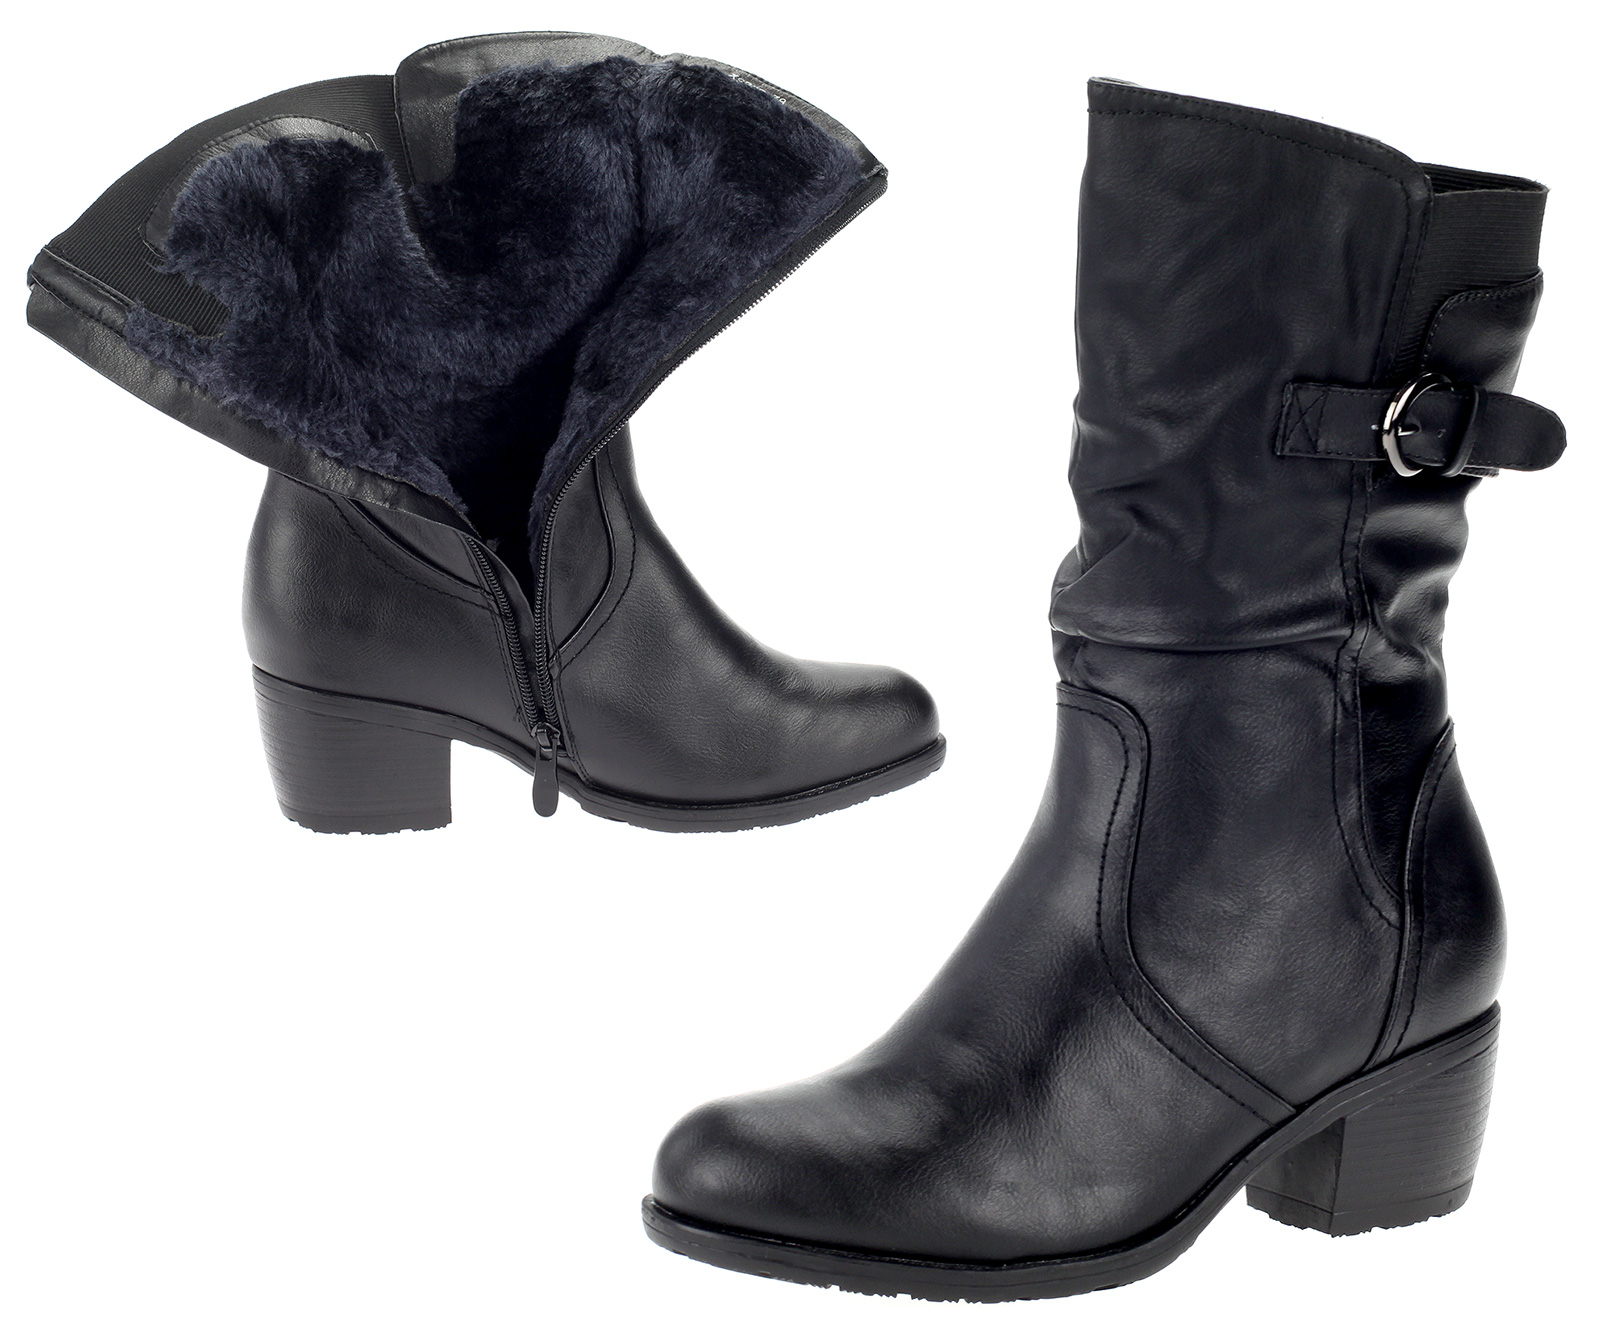 Damen Stiefel Winterstiefel Boots Schuhe Warm Gefüttert Leder-Optik Schwarz X9802-black